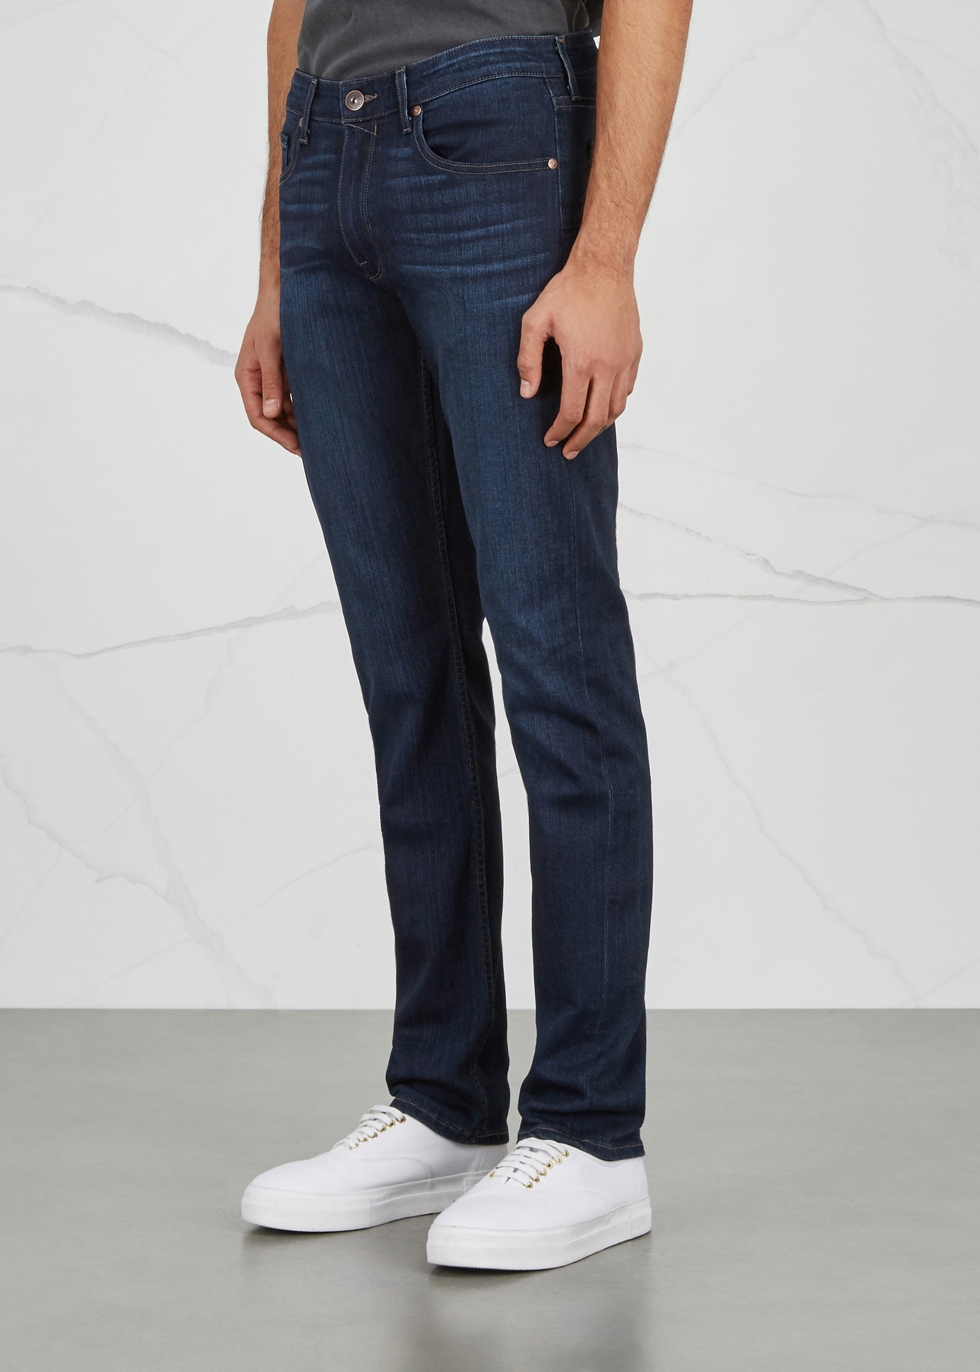 paige lennox jeans